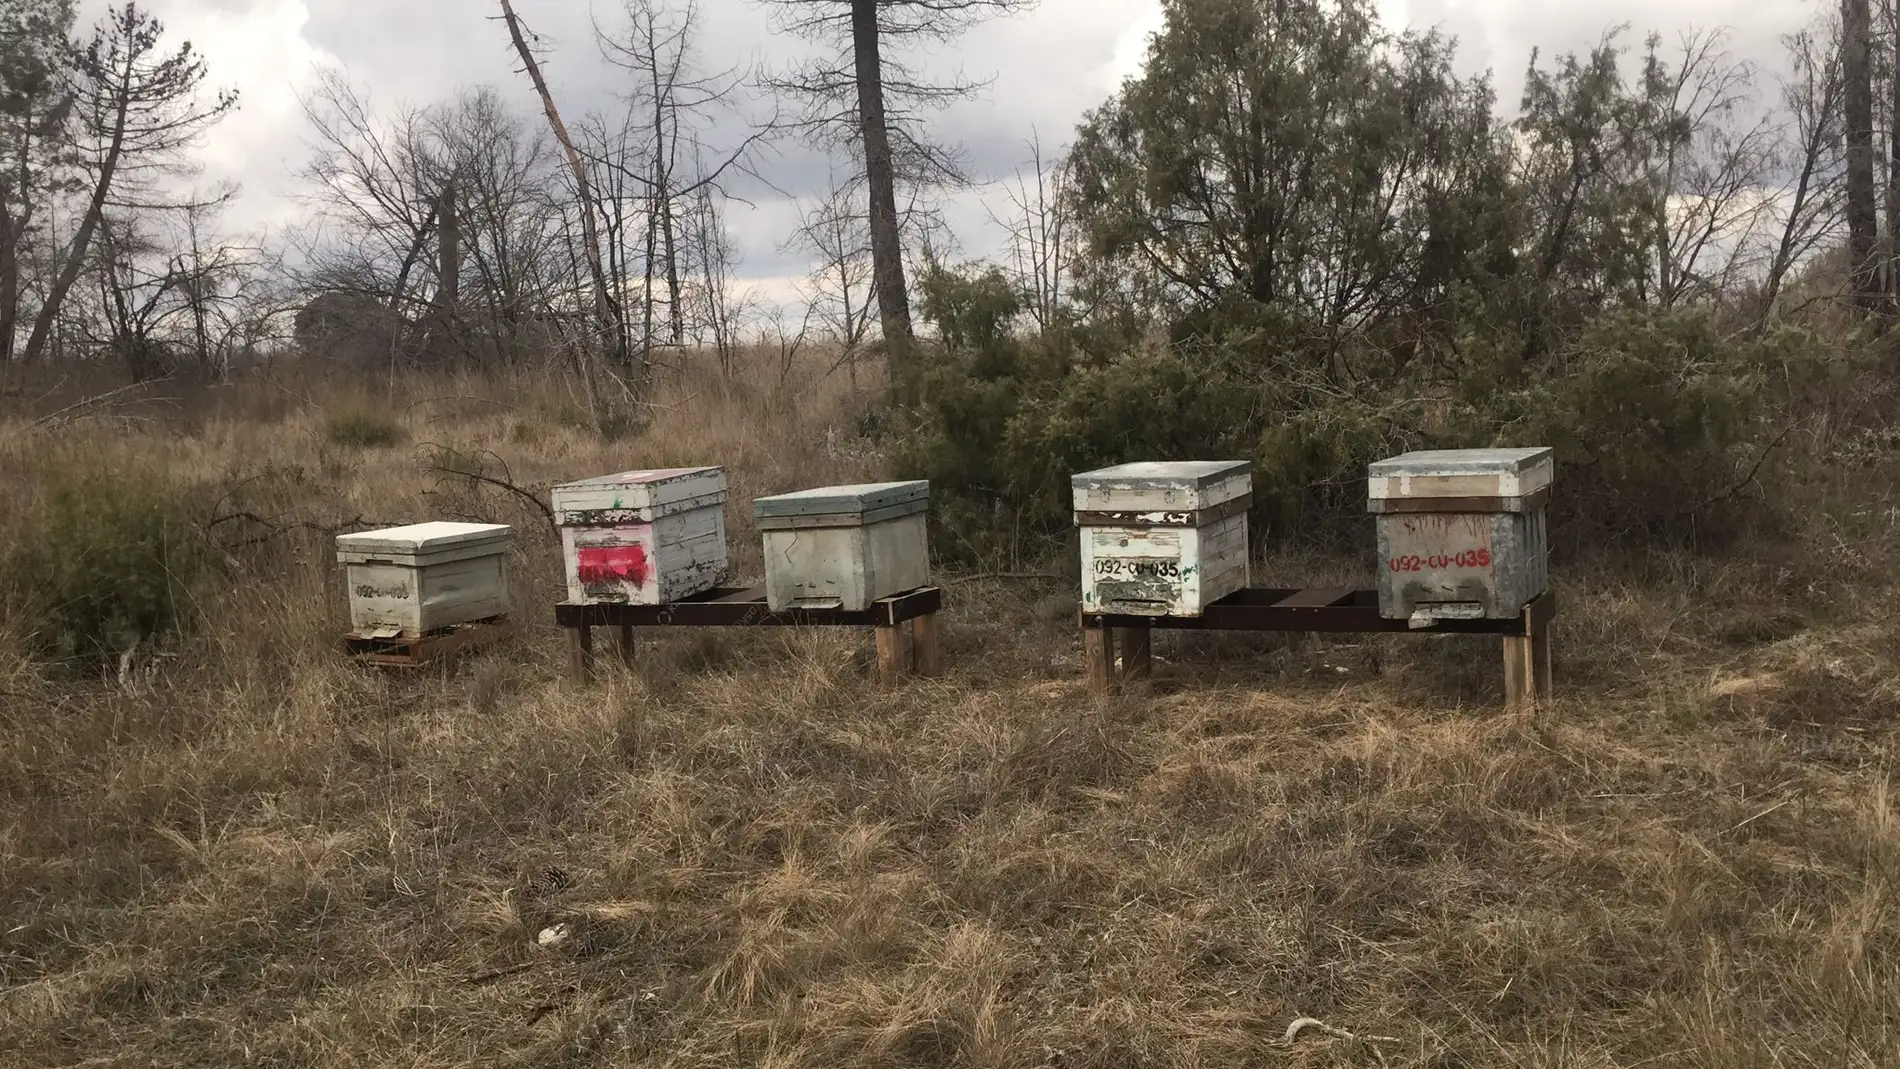 Colmenas de abejas colocadas en la zona del incendio de 2019